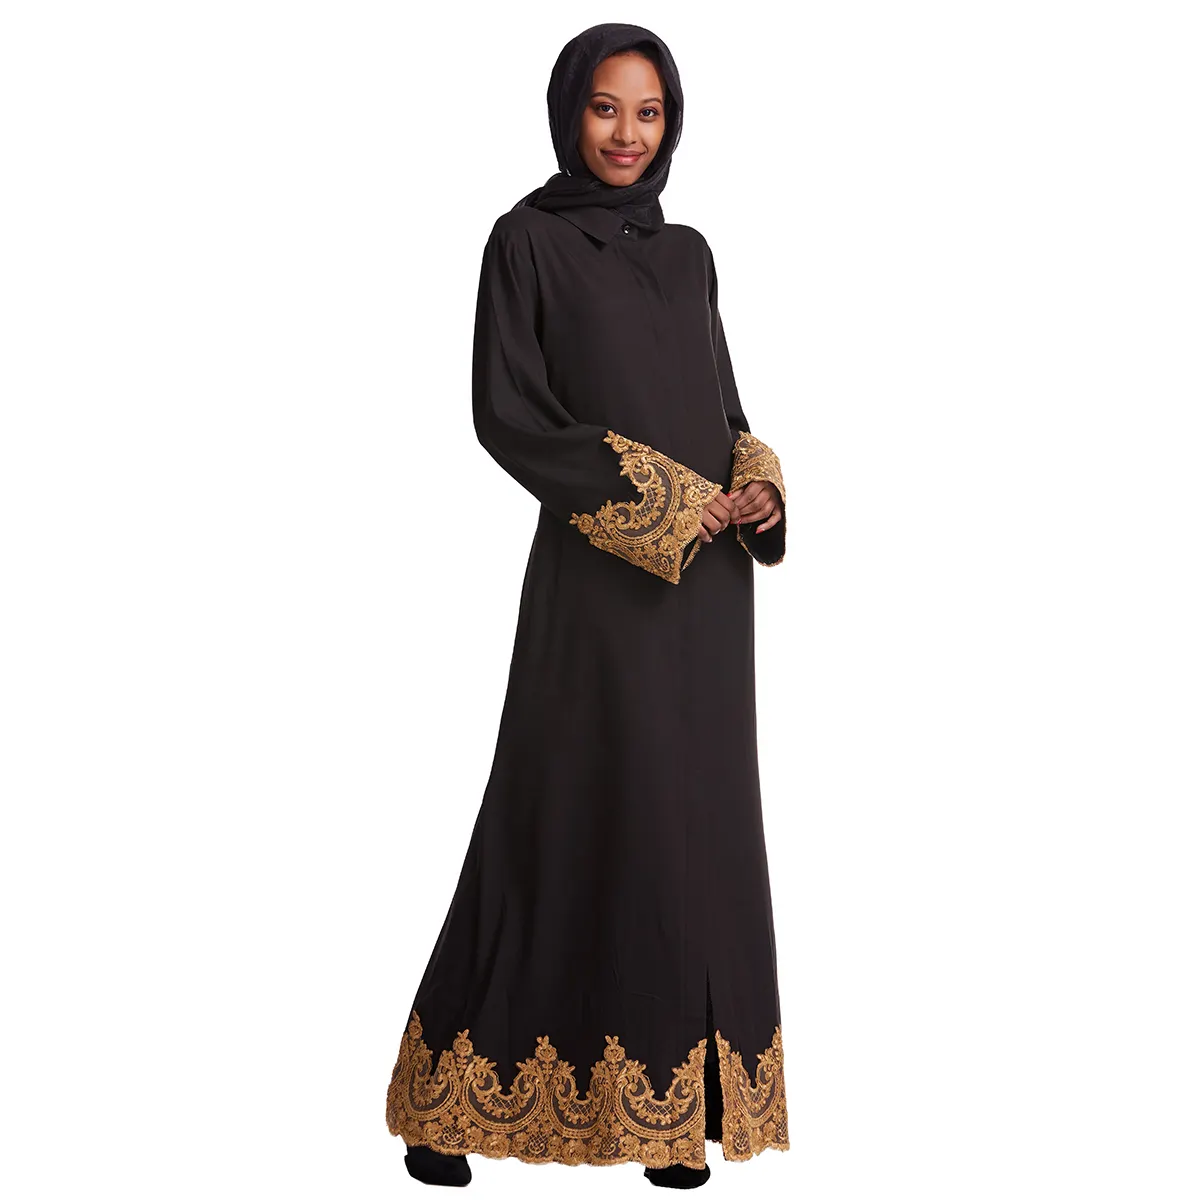 Kimono Kaftan terbuka Lebaran Ramadan kardigan lengan panjang pakaian Islami wanita Muslim Dubai Linen depan terbuka Abaya